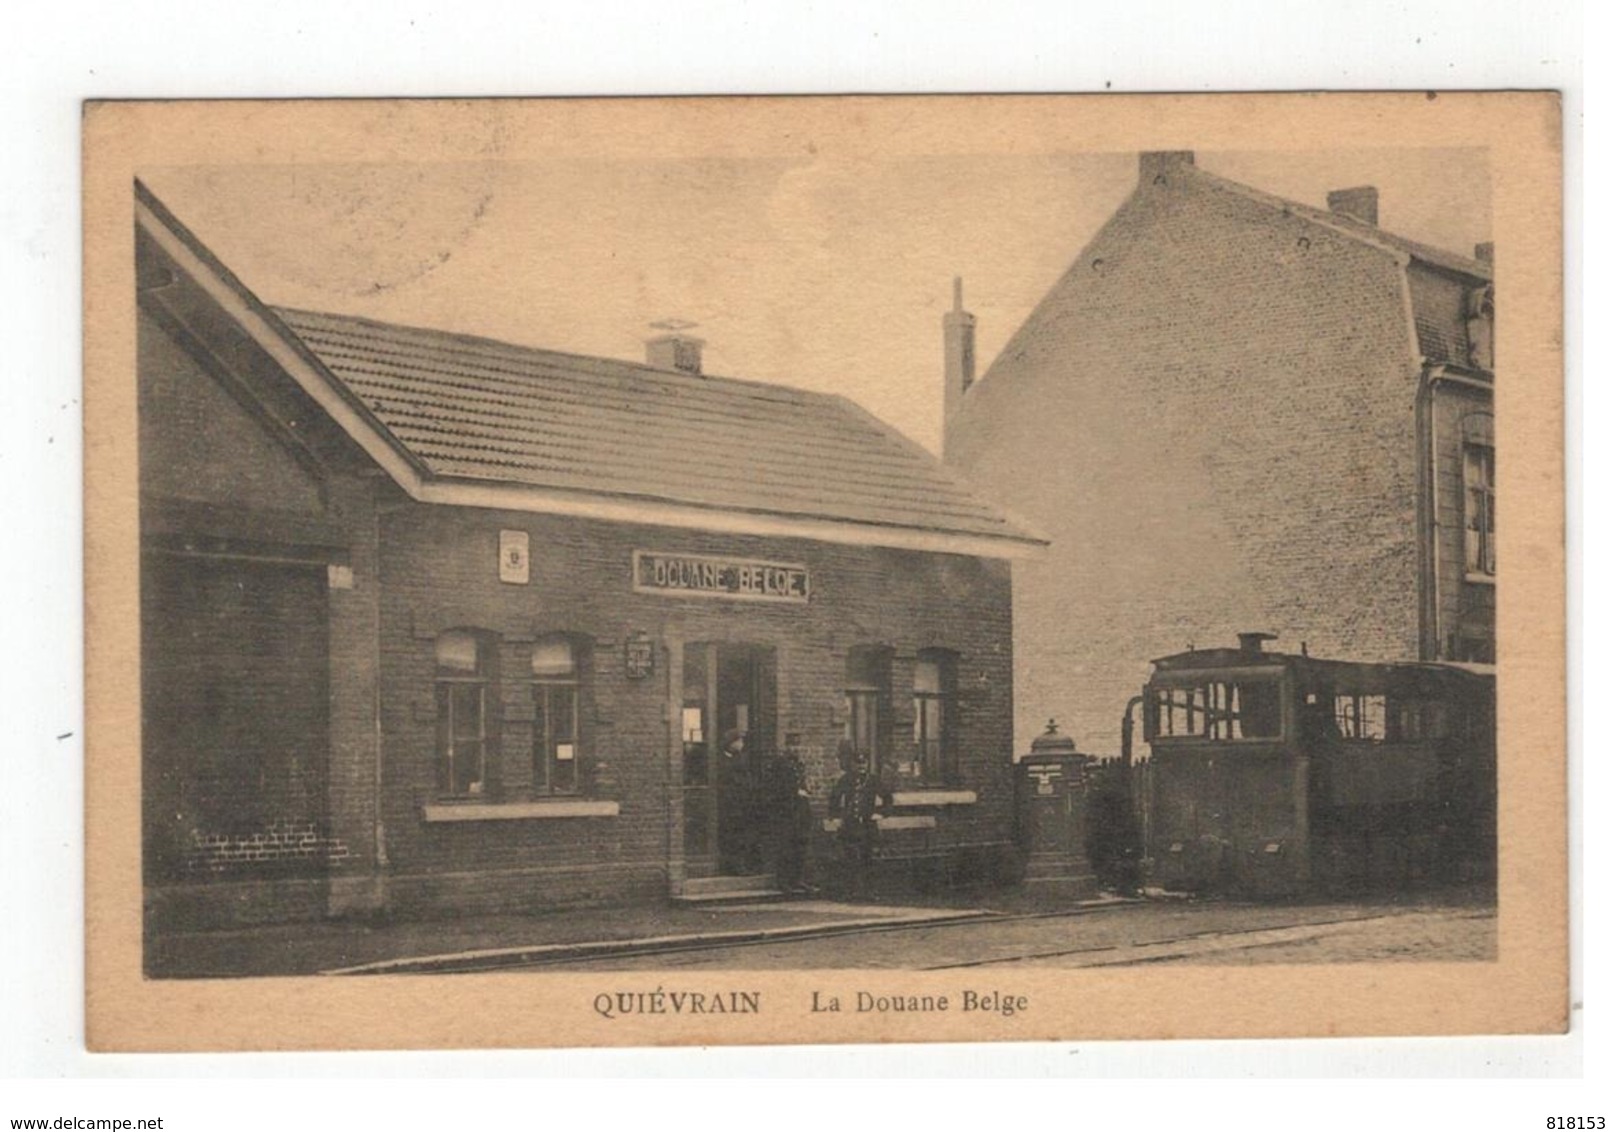 QUIEVRAIN  La Douane Belge 1921 ( Tram à Vapeur) - Quiévrain